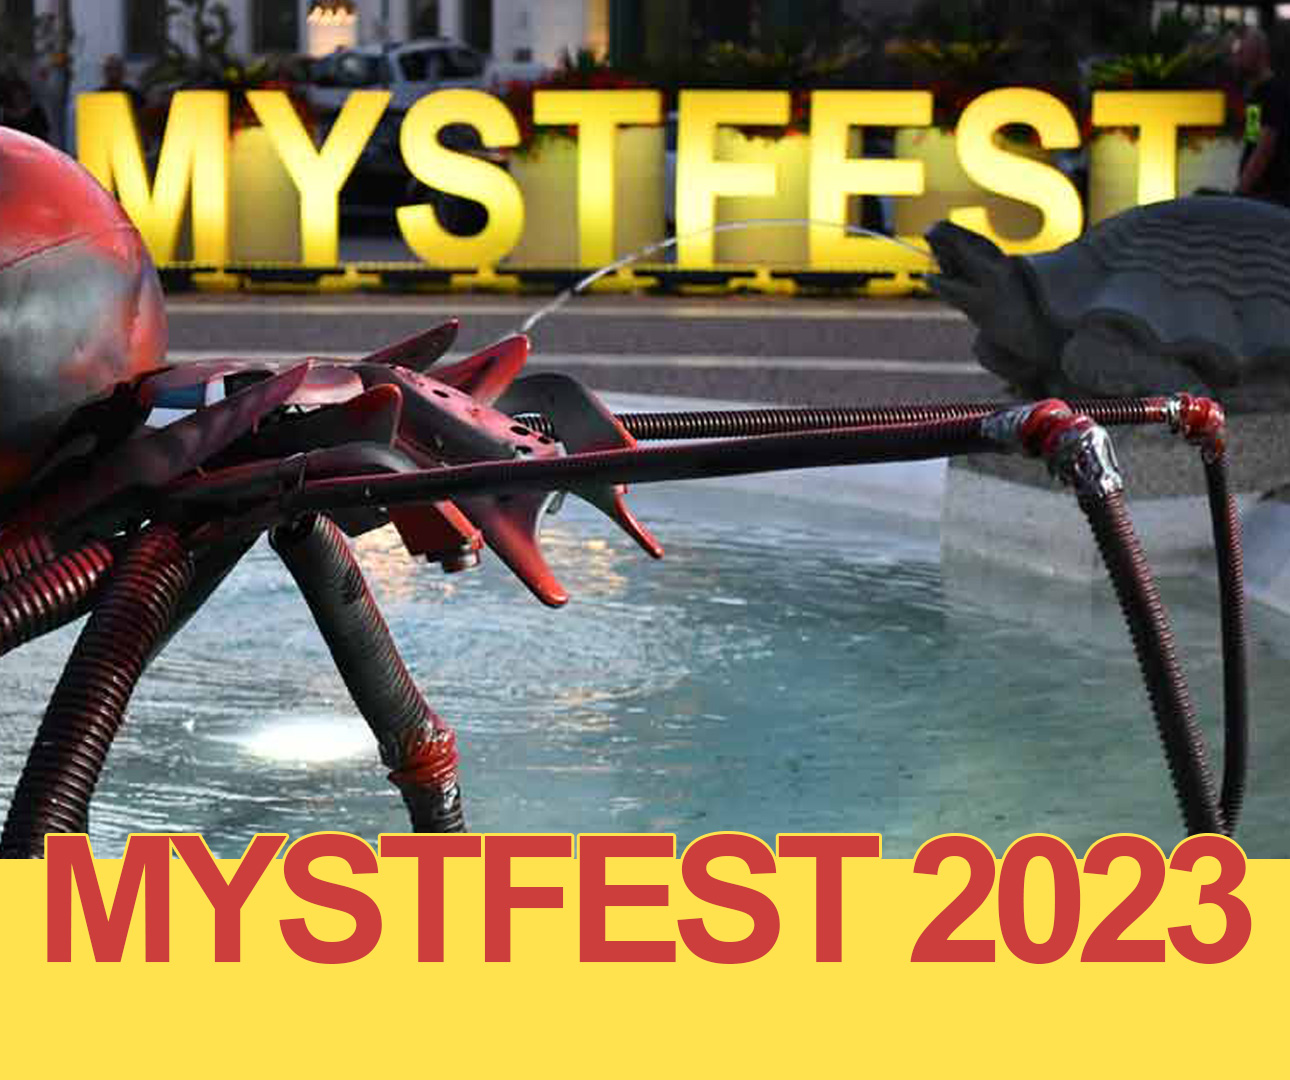 Mystfest 2023